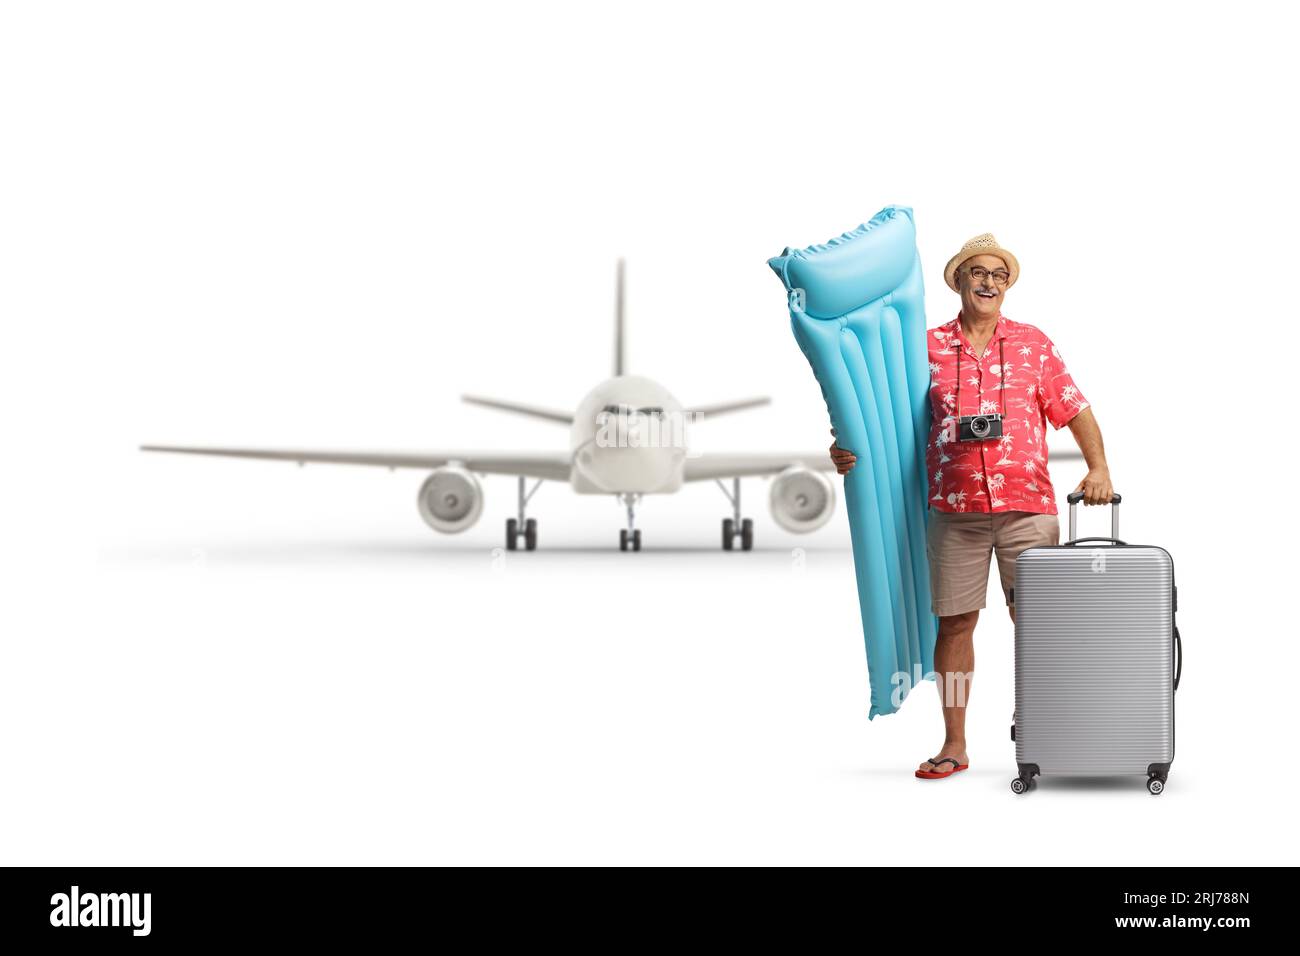 Heureux touriste masculin mature tenant un matelas gonflable et une valise devant un avion isolé sur un fond blanc Banque D'Images